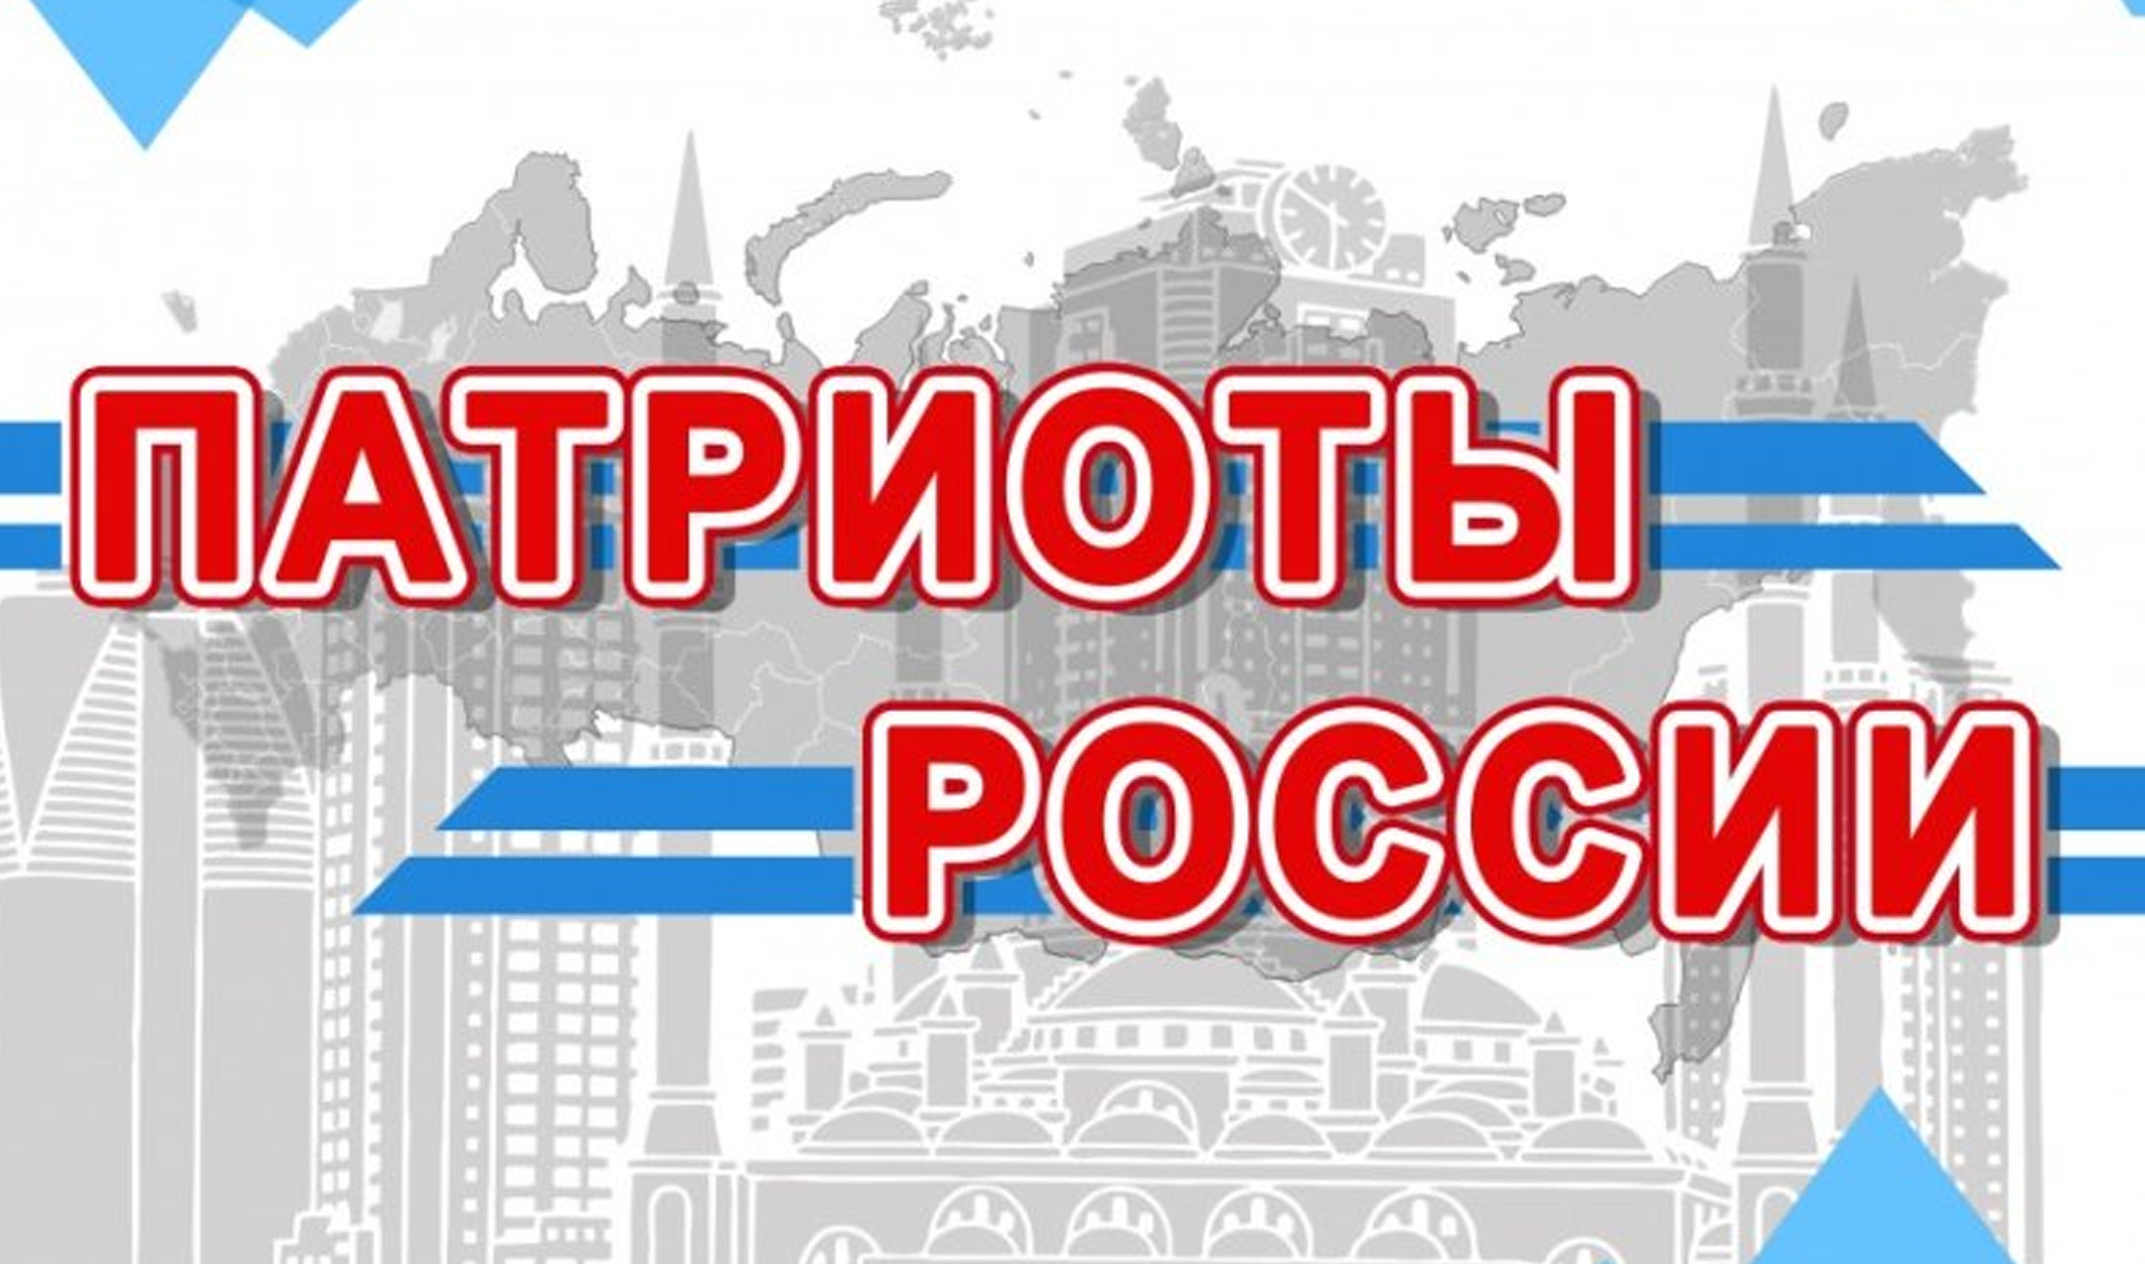  В Чечне с 1 по 7 августа пройдет межнациональный молодежный слет «Патриоты России»